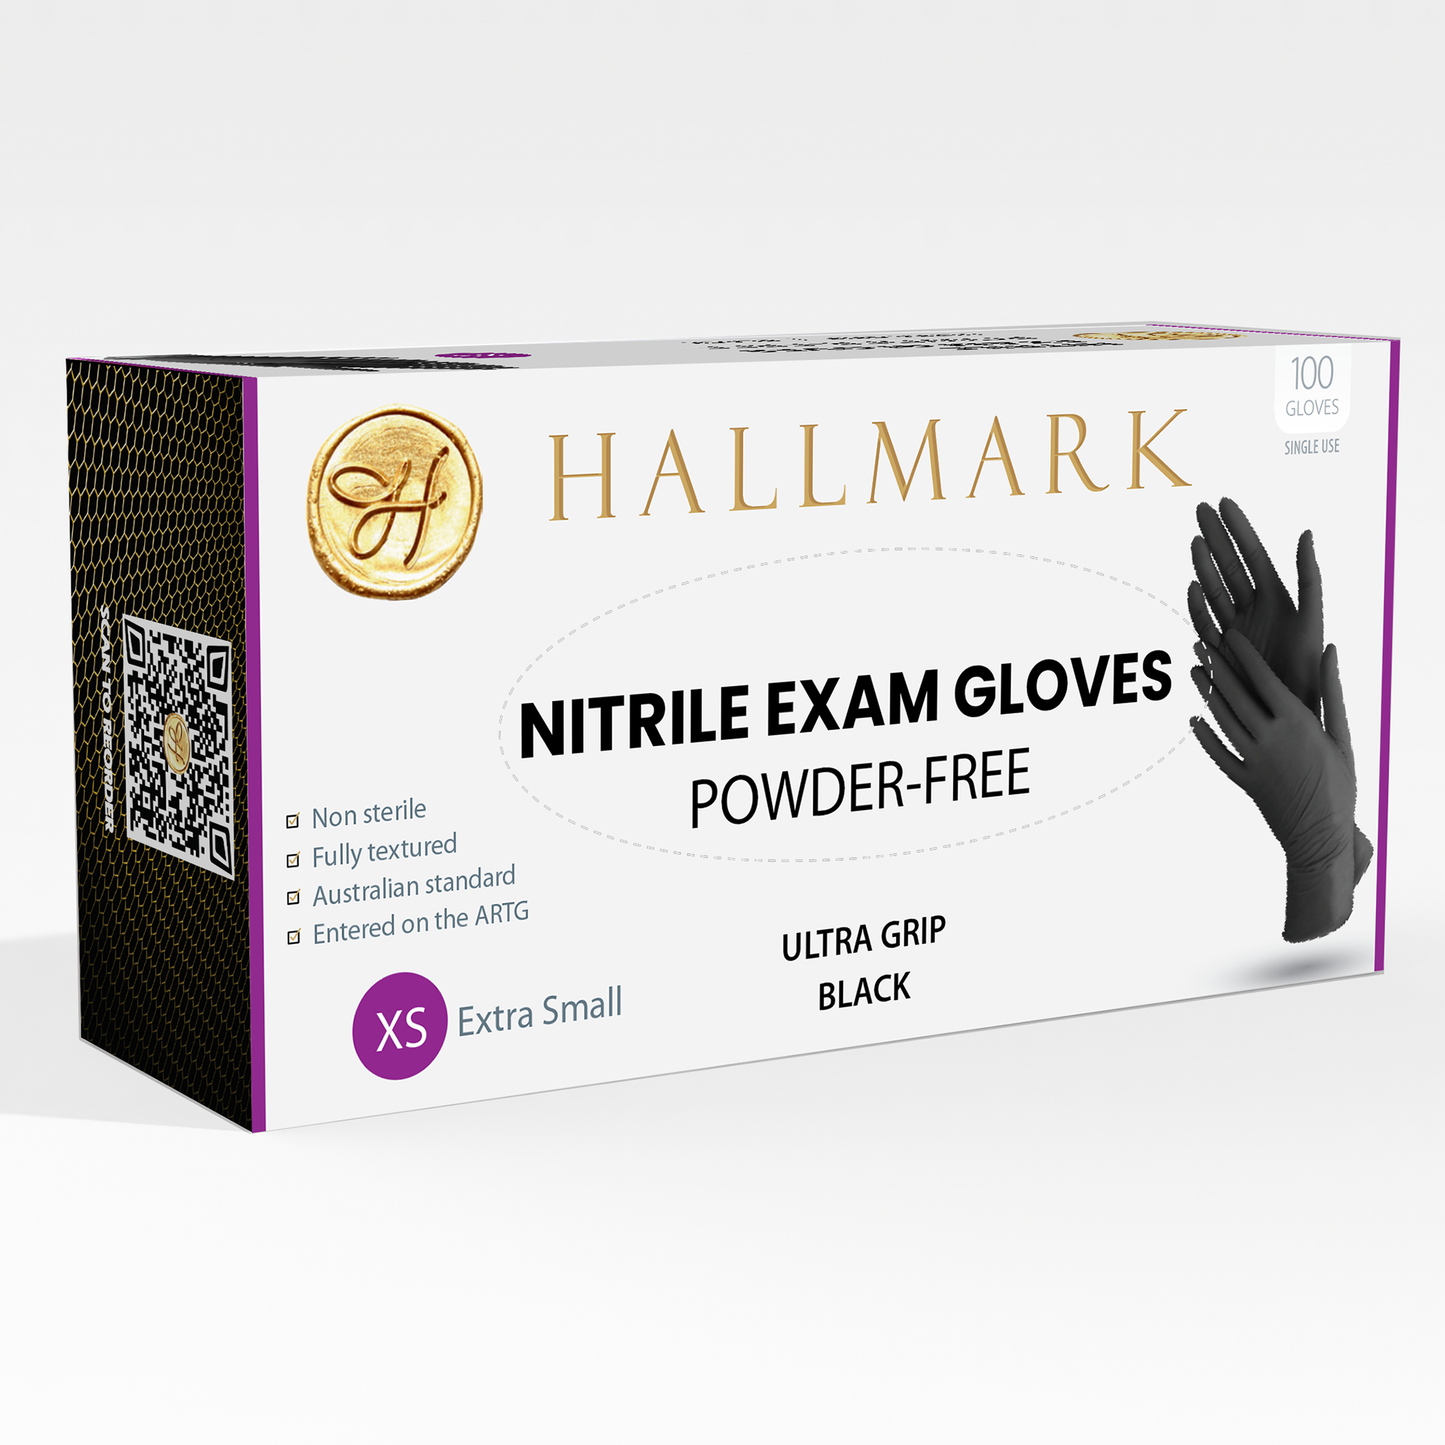 Hallmark Premium Black Nitrile Gloves, $6.95 per box of 100, 10 boxes per carton